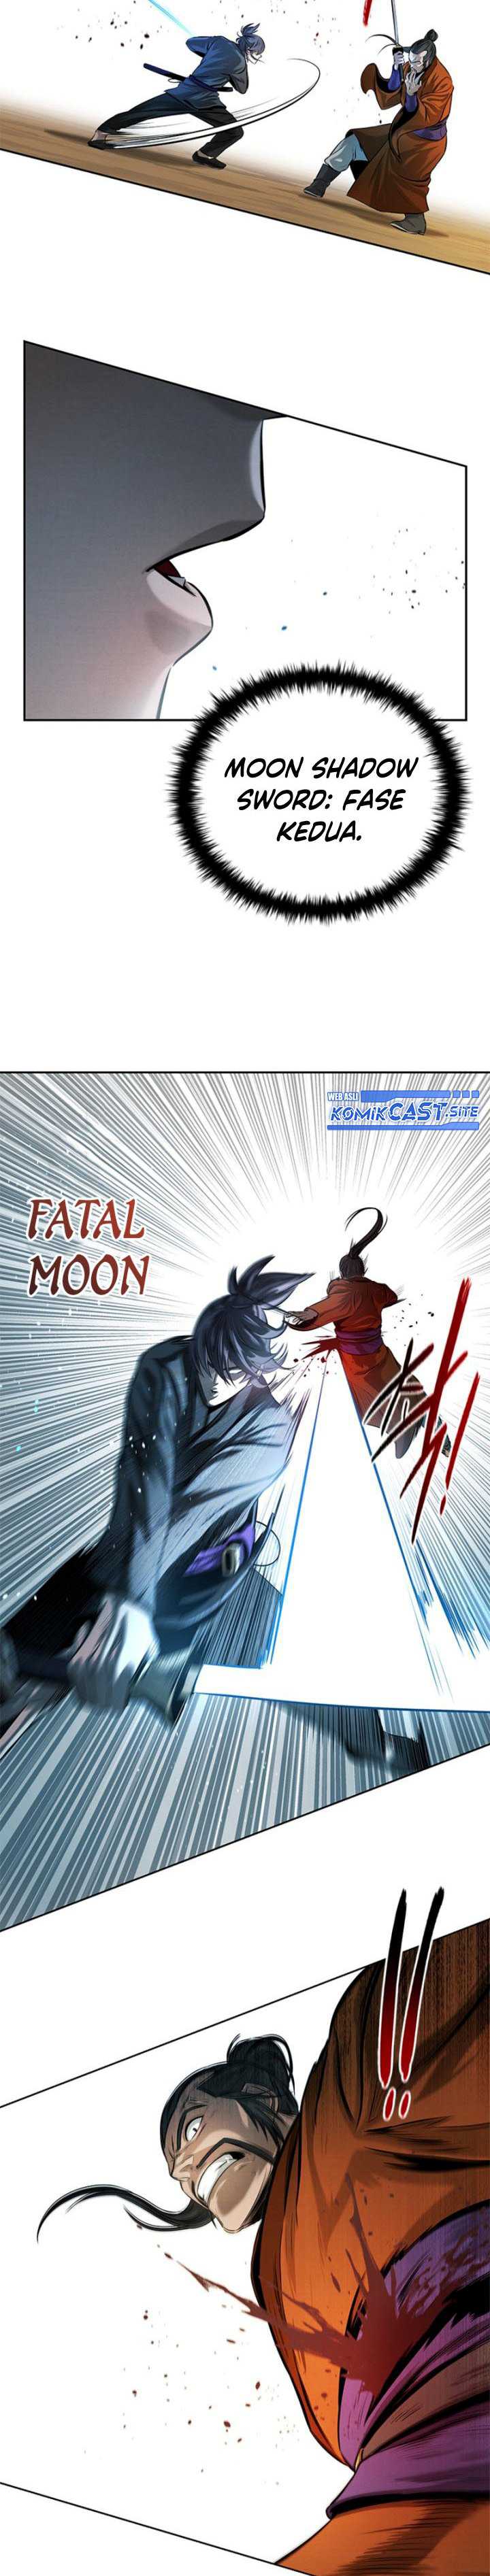 Moon-Shadow Sword Emperor Chapter 07